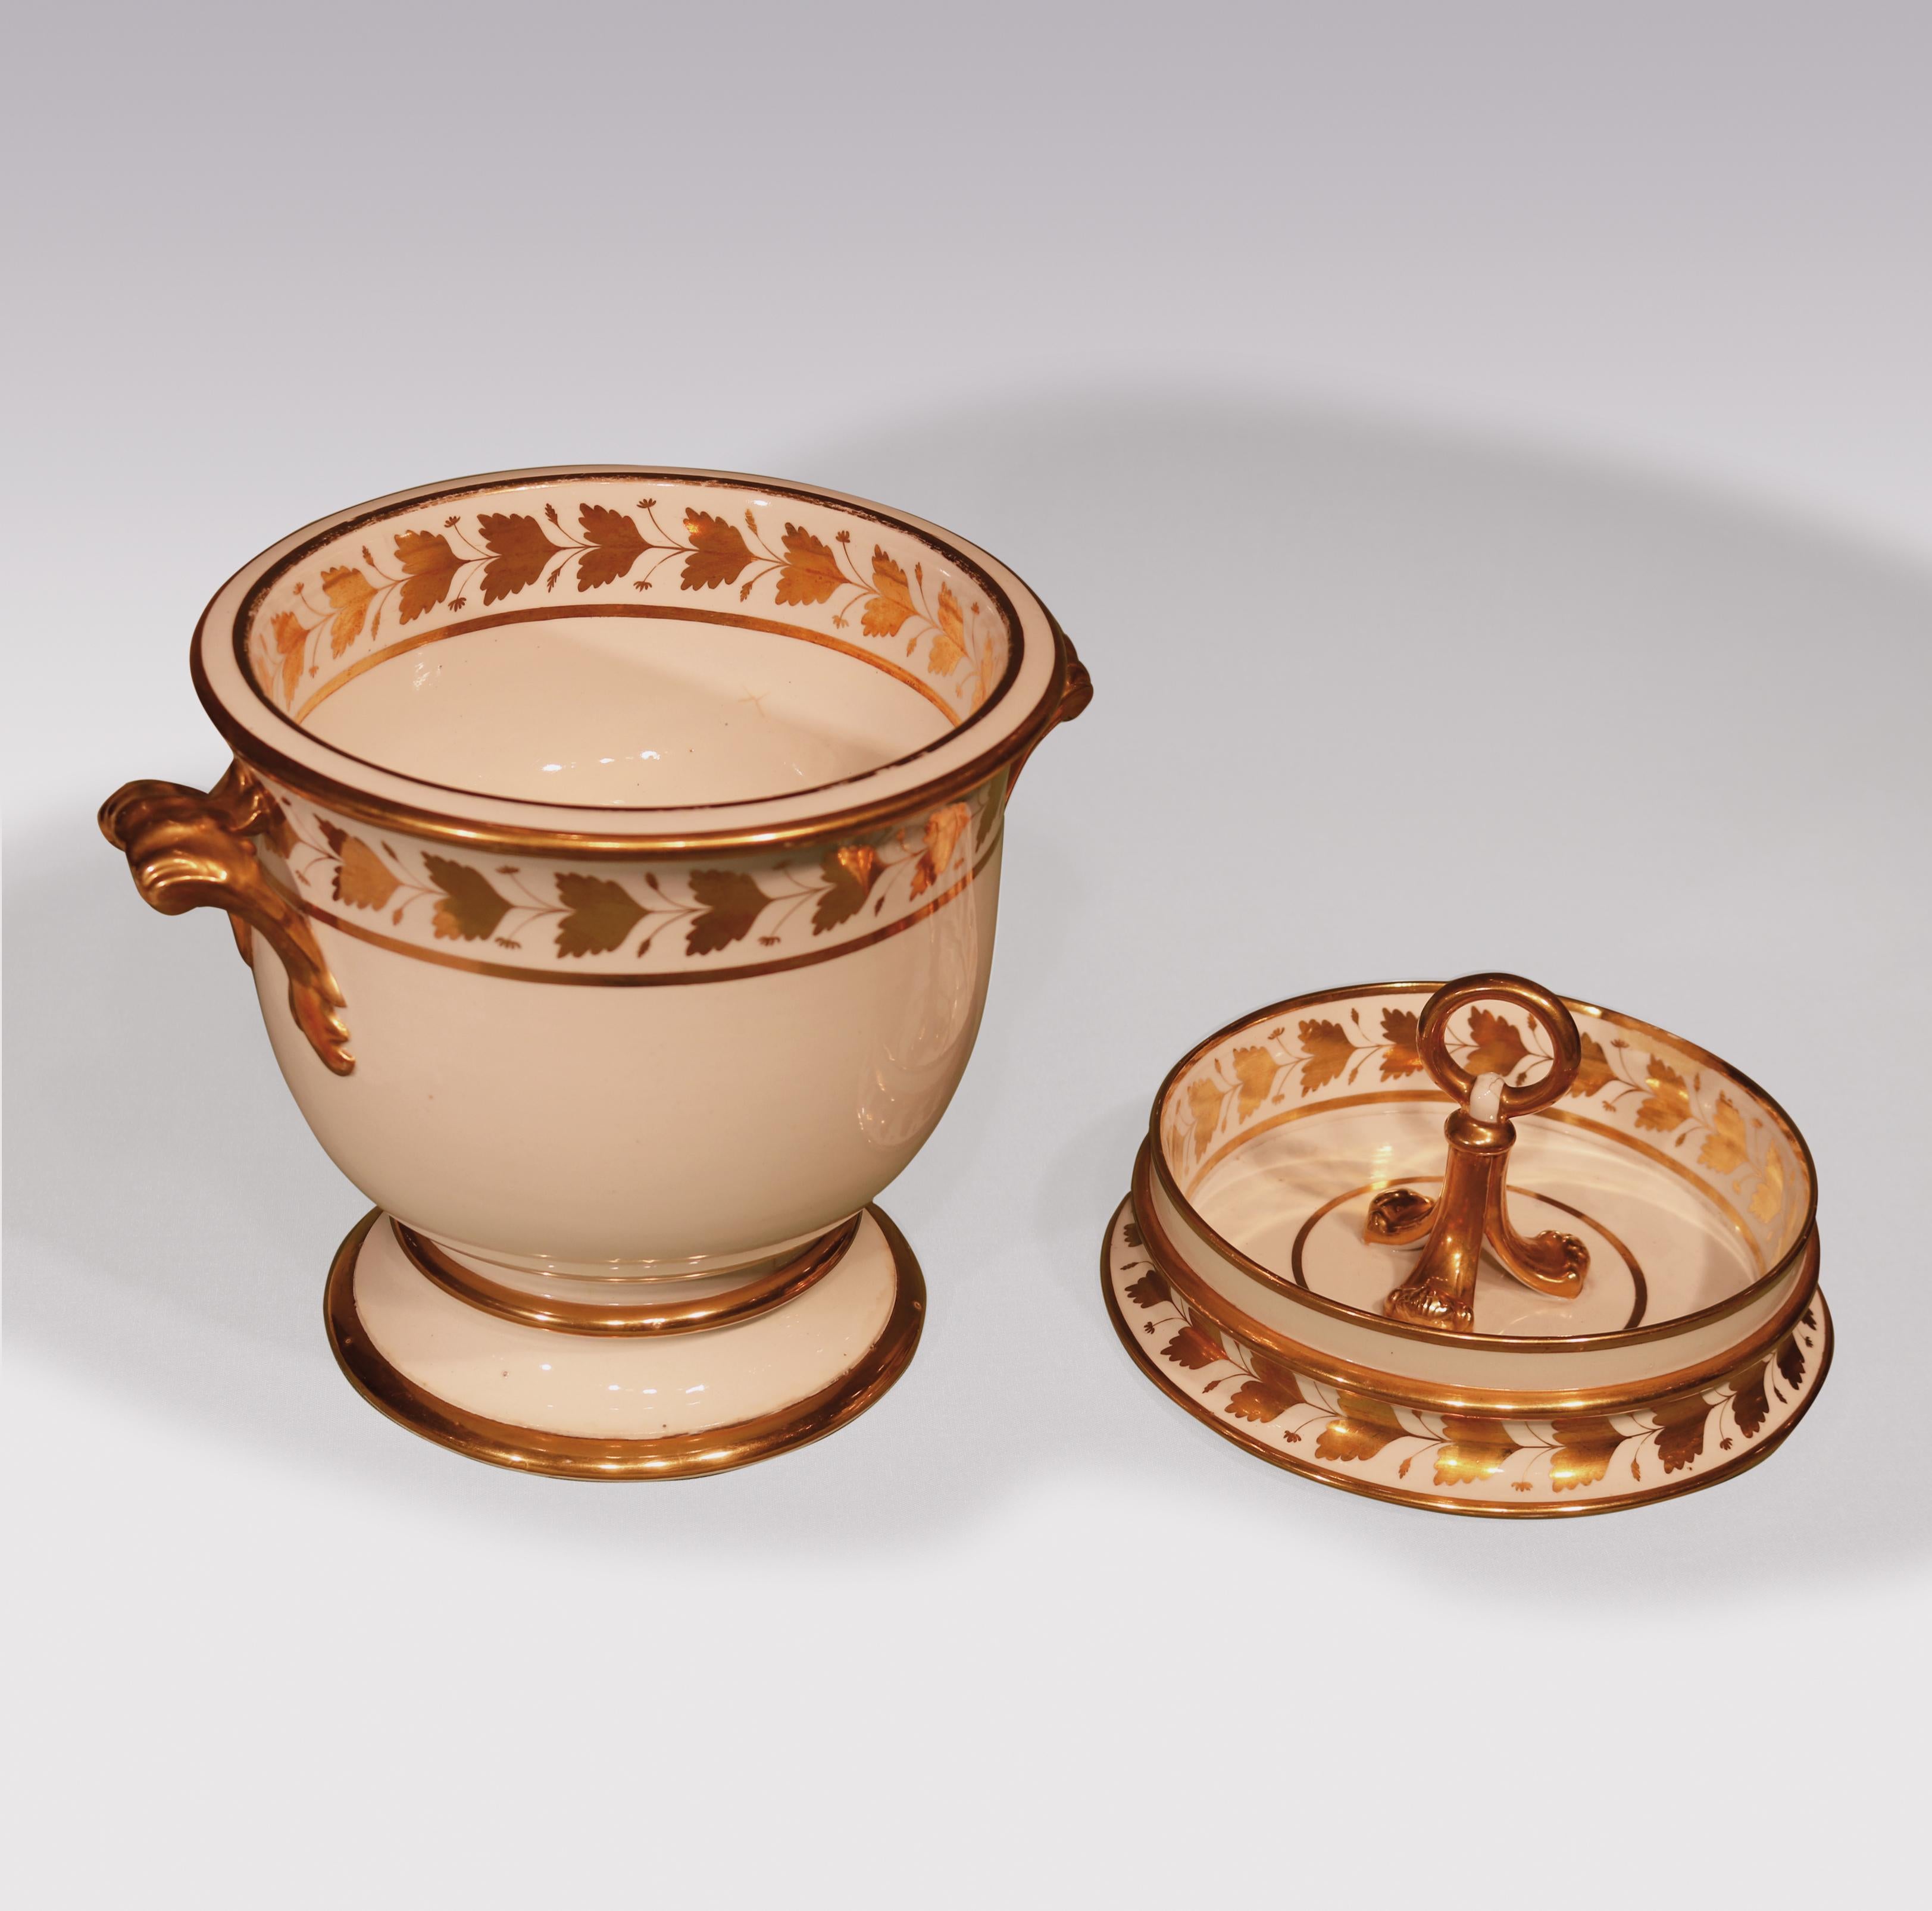 Paire de fers à glace en porcelaine du début du 19e siècle avec des bordures décorées de feuilles dorées, faisant partie d'un service à dessert comprenant 20 assiettes, 3 plats à coquille, 3 plats circulaires, 4 plats ovales, 1 comport et une paire